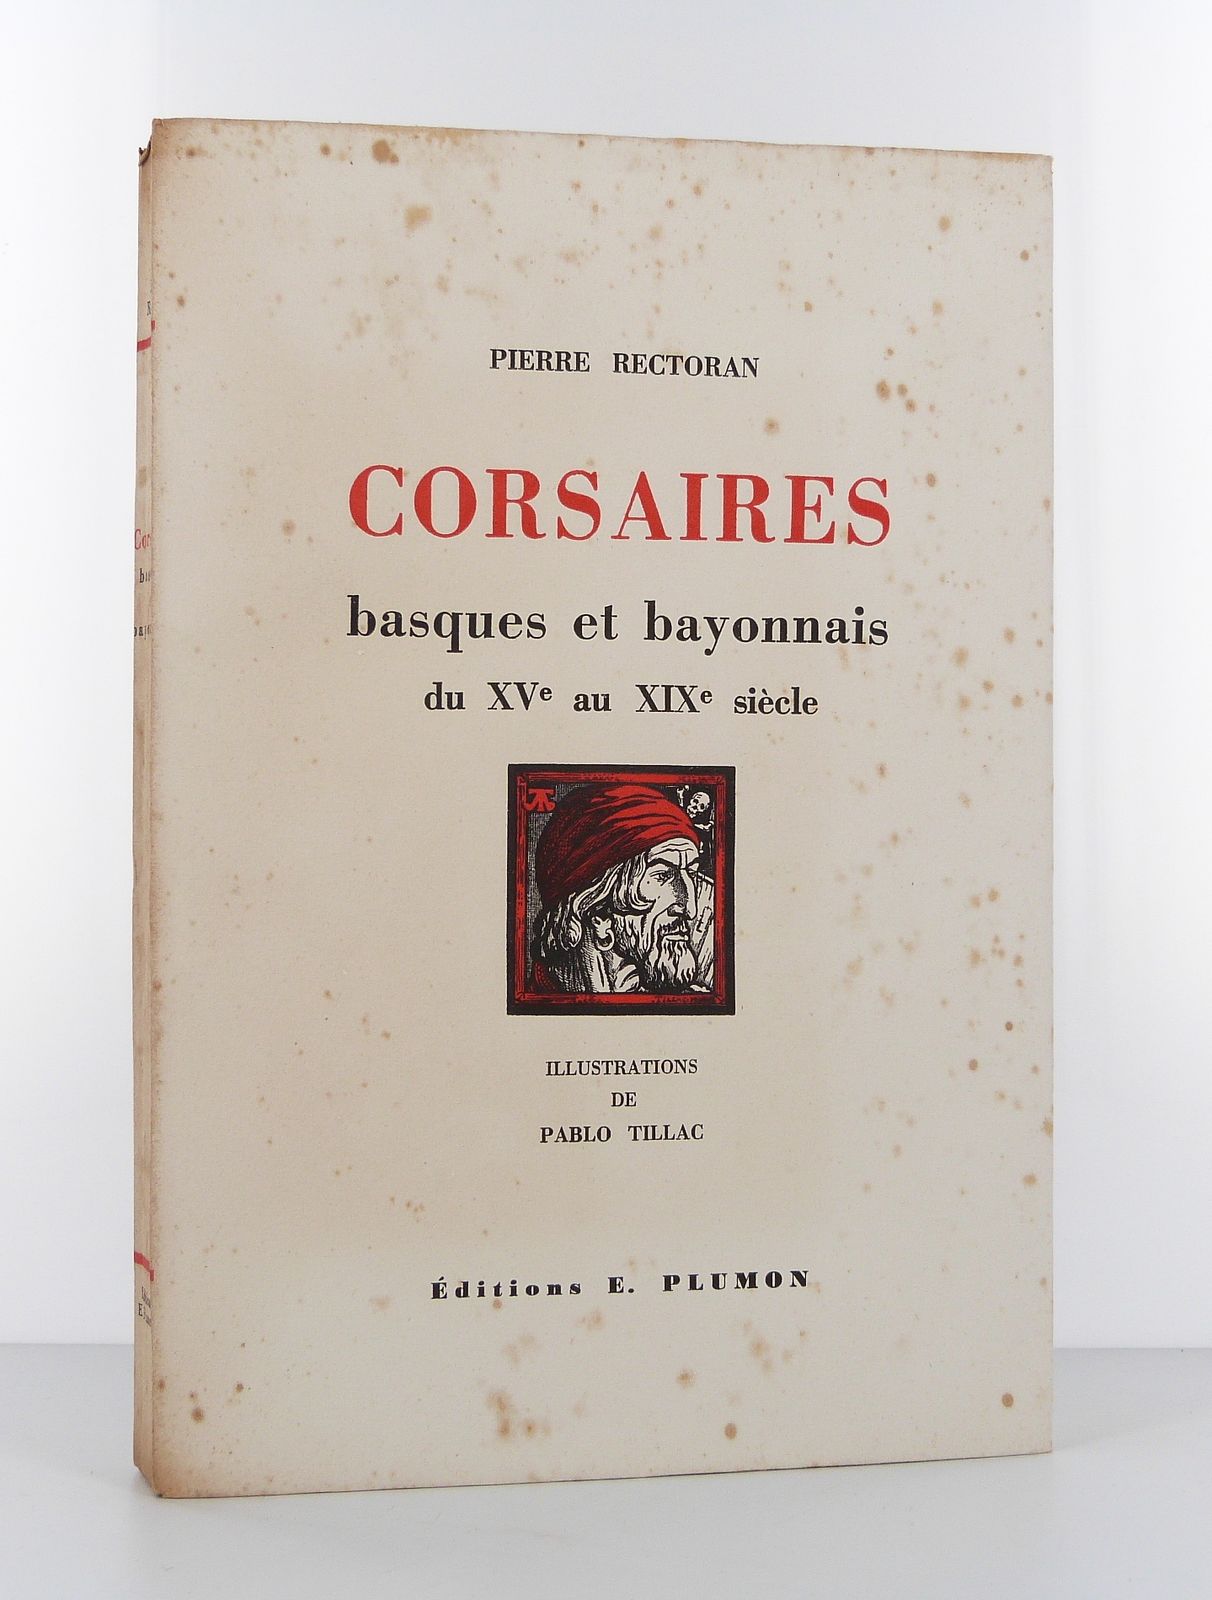 Corsaires basques et bayonnais du XVe au XIXe siècle